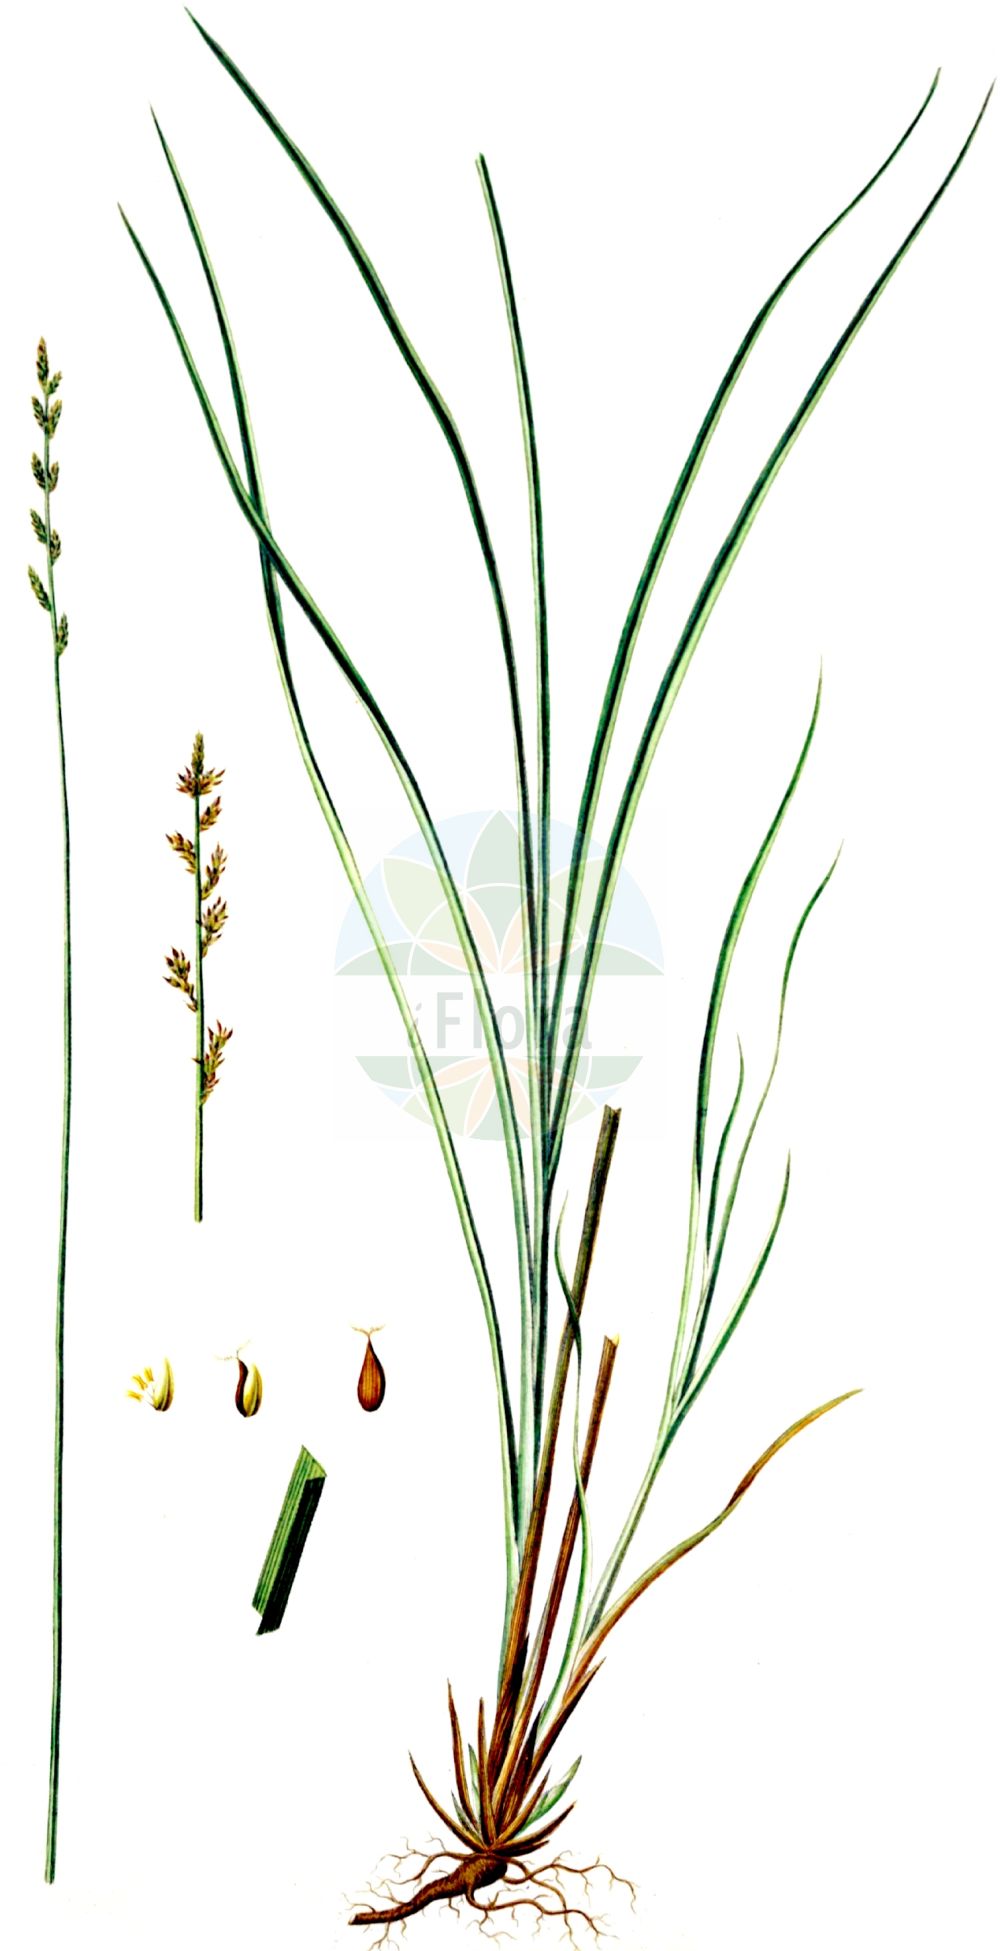 Historische Abbildung von Carex elongata (Walzen-Segge - Elongated Sedge). Das Bild zeigt Blatt, Bluete, Frucht und Same. ---- Historical Drawing of Carex elongata (Walzen-Segge - Elongated Sedge). The image is showing leaf, flower, fruit and seed.(Carex elongata,Walzen-Segge,Elongated Sedge,Carex elongata,Vignea elongata,Walzen-Segge,Langaehrige Segge,Elongated Sedge,Gingerbread Sedge,Carex,Segge,Sedge,Cyperaceae,Sauergräser,Sedge family,Blatt,Bluete,Frucht,Same,leaf,flower,fruit,seed,Oeder (1761-1883))